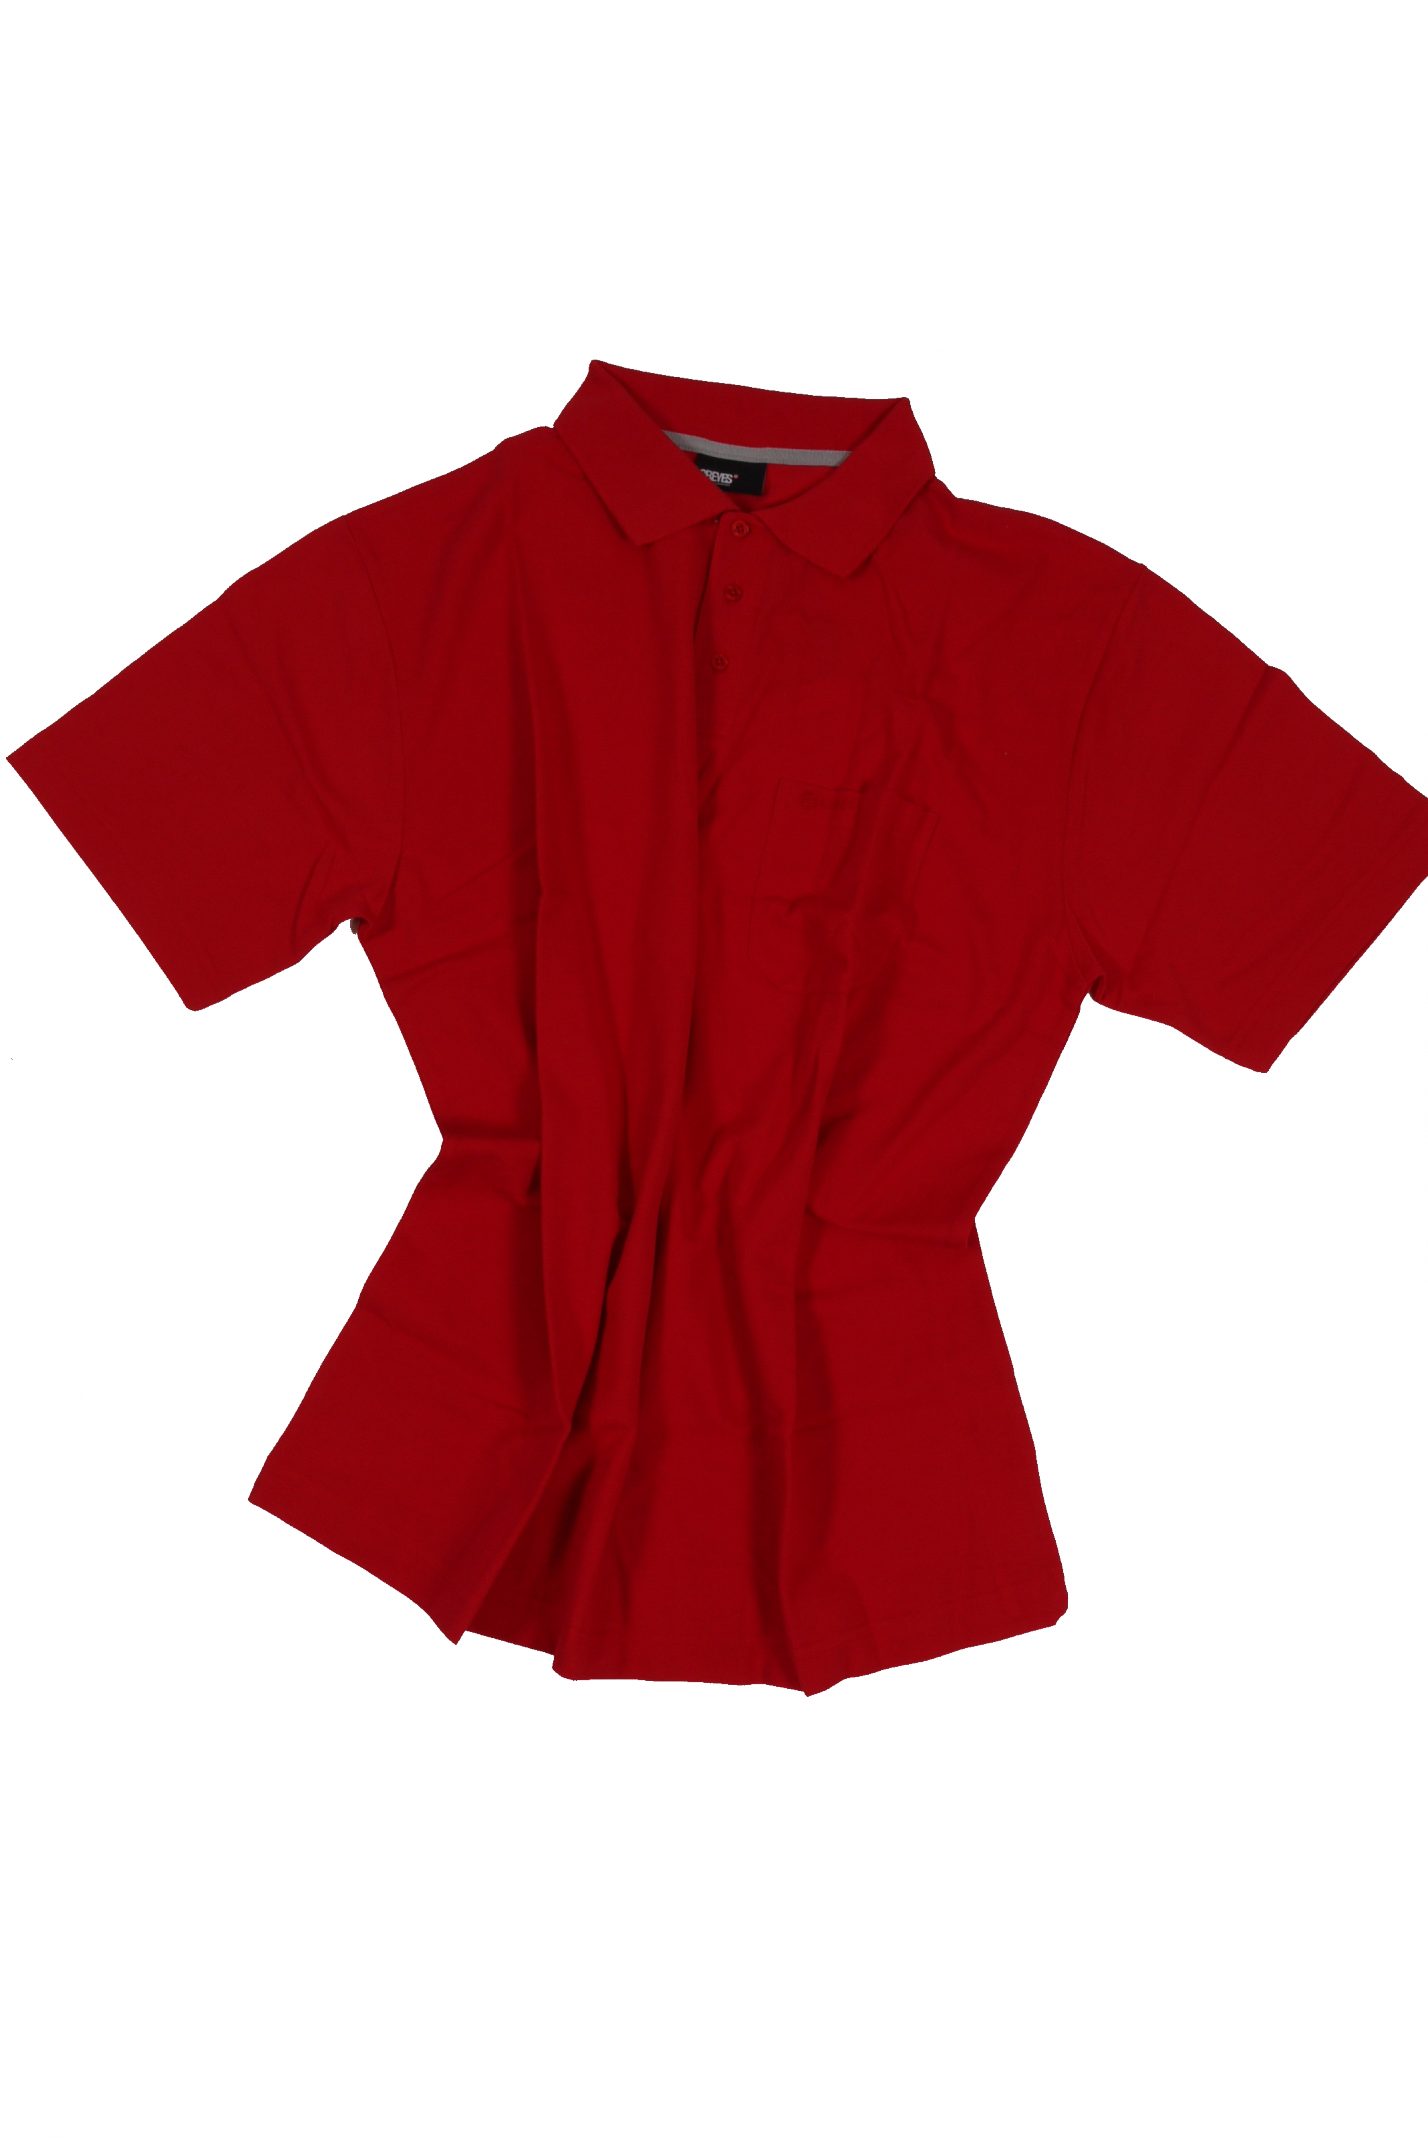 pique bis in north Poloshirt Allsize Übergröße rot 8XL von 4 56 in Polohemd